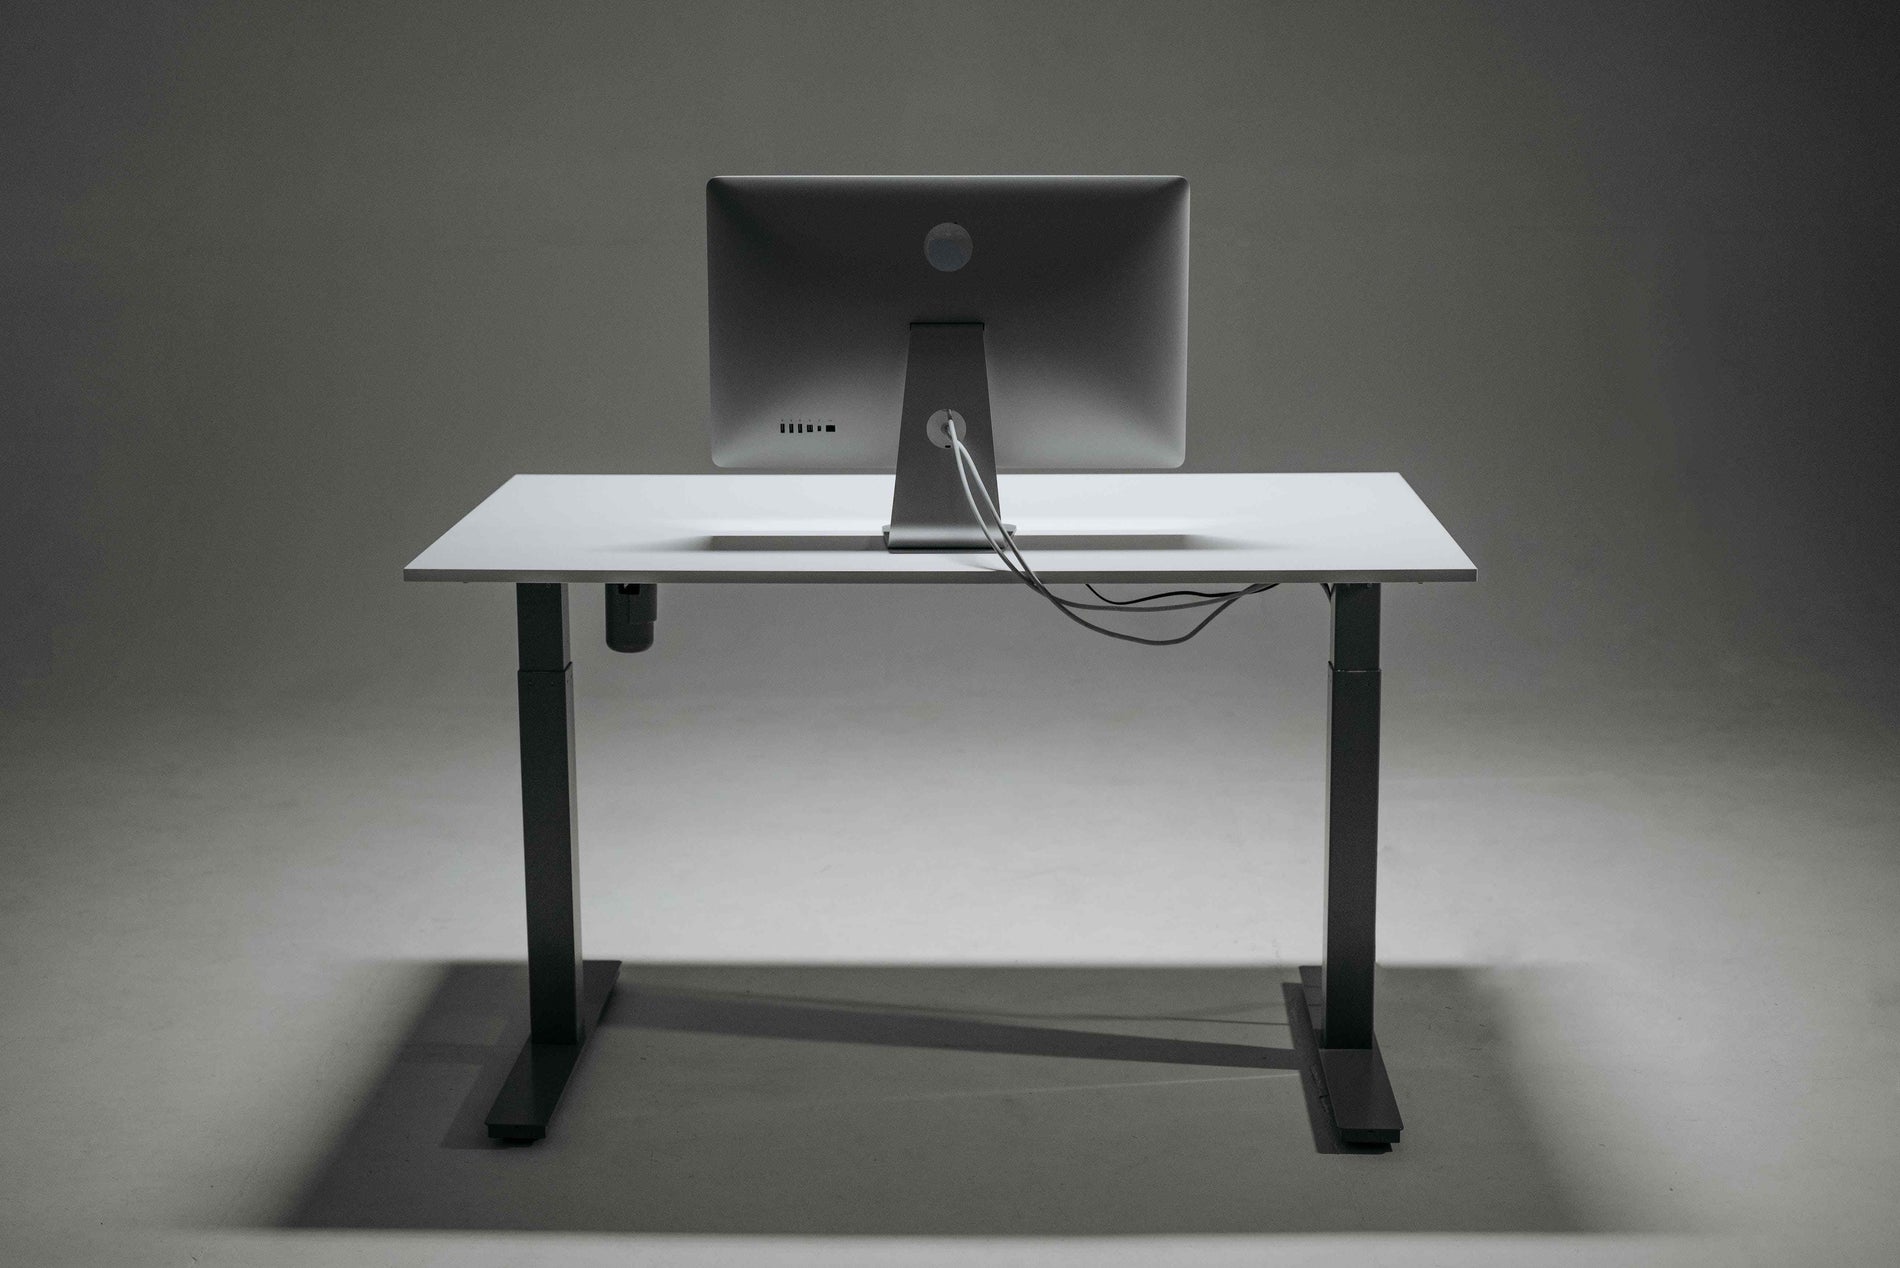 Do Chiropractors Recommend Standing Desks?